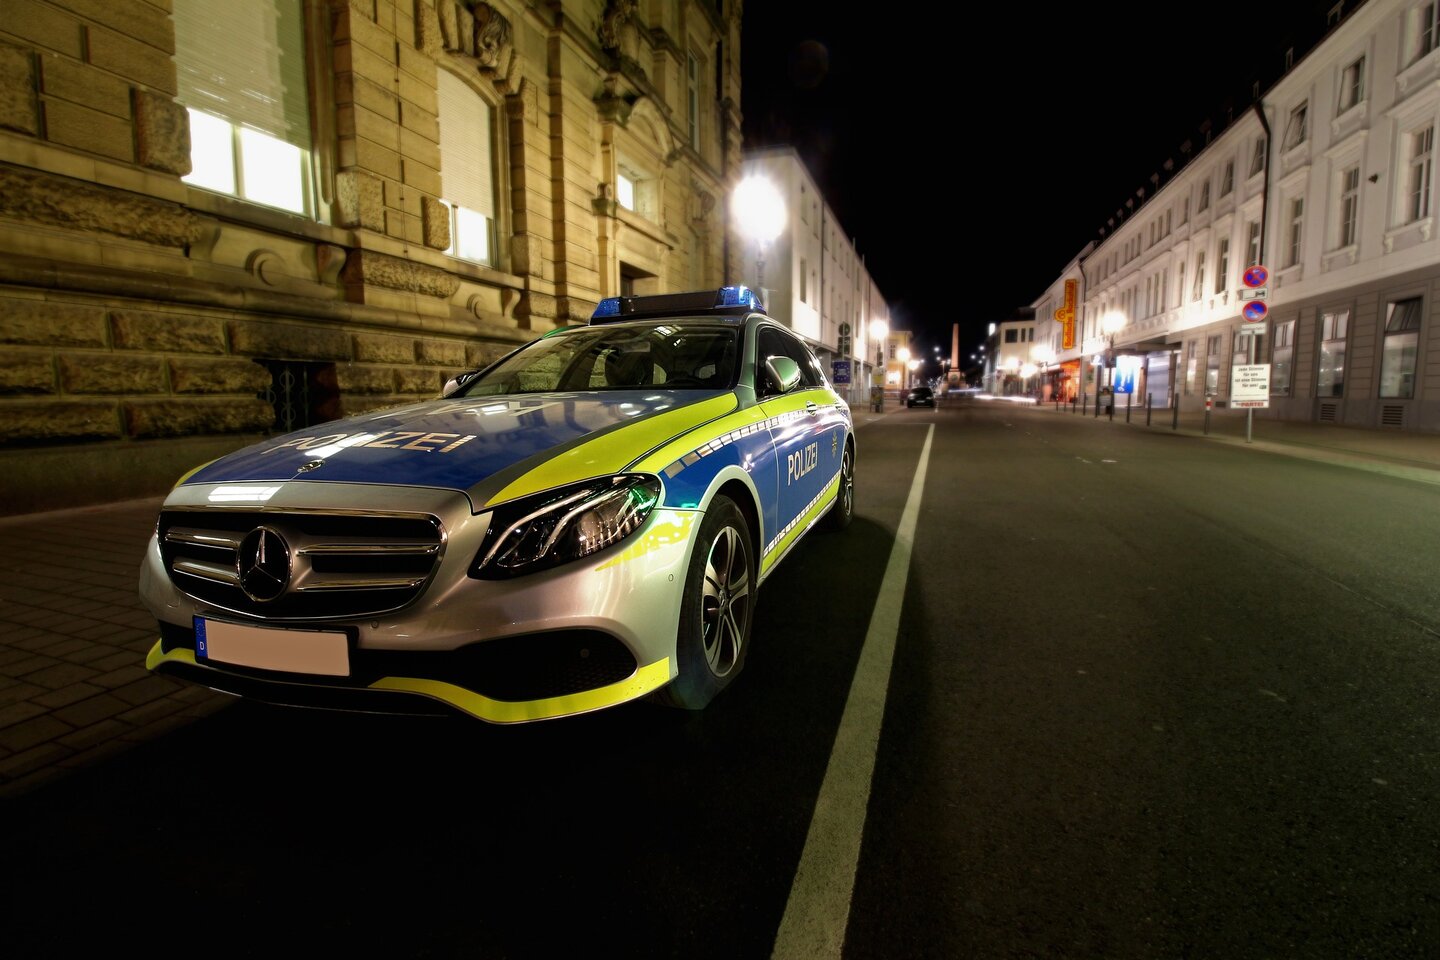 Duitse mercedes-benz politie auto in een straat voorzien van straatverlichting